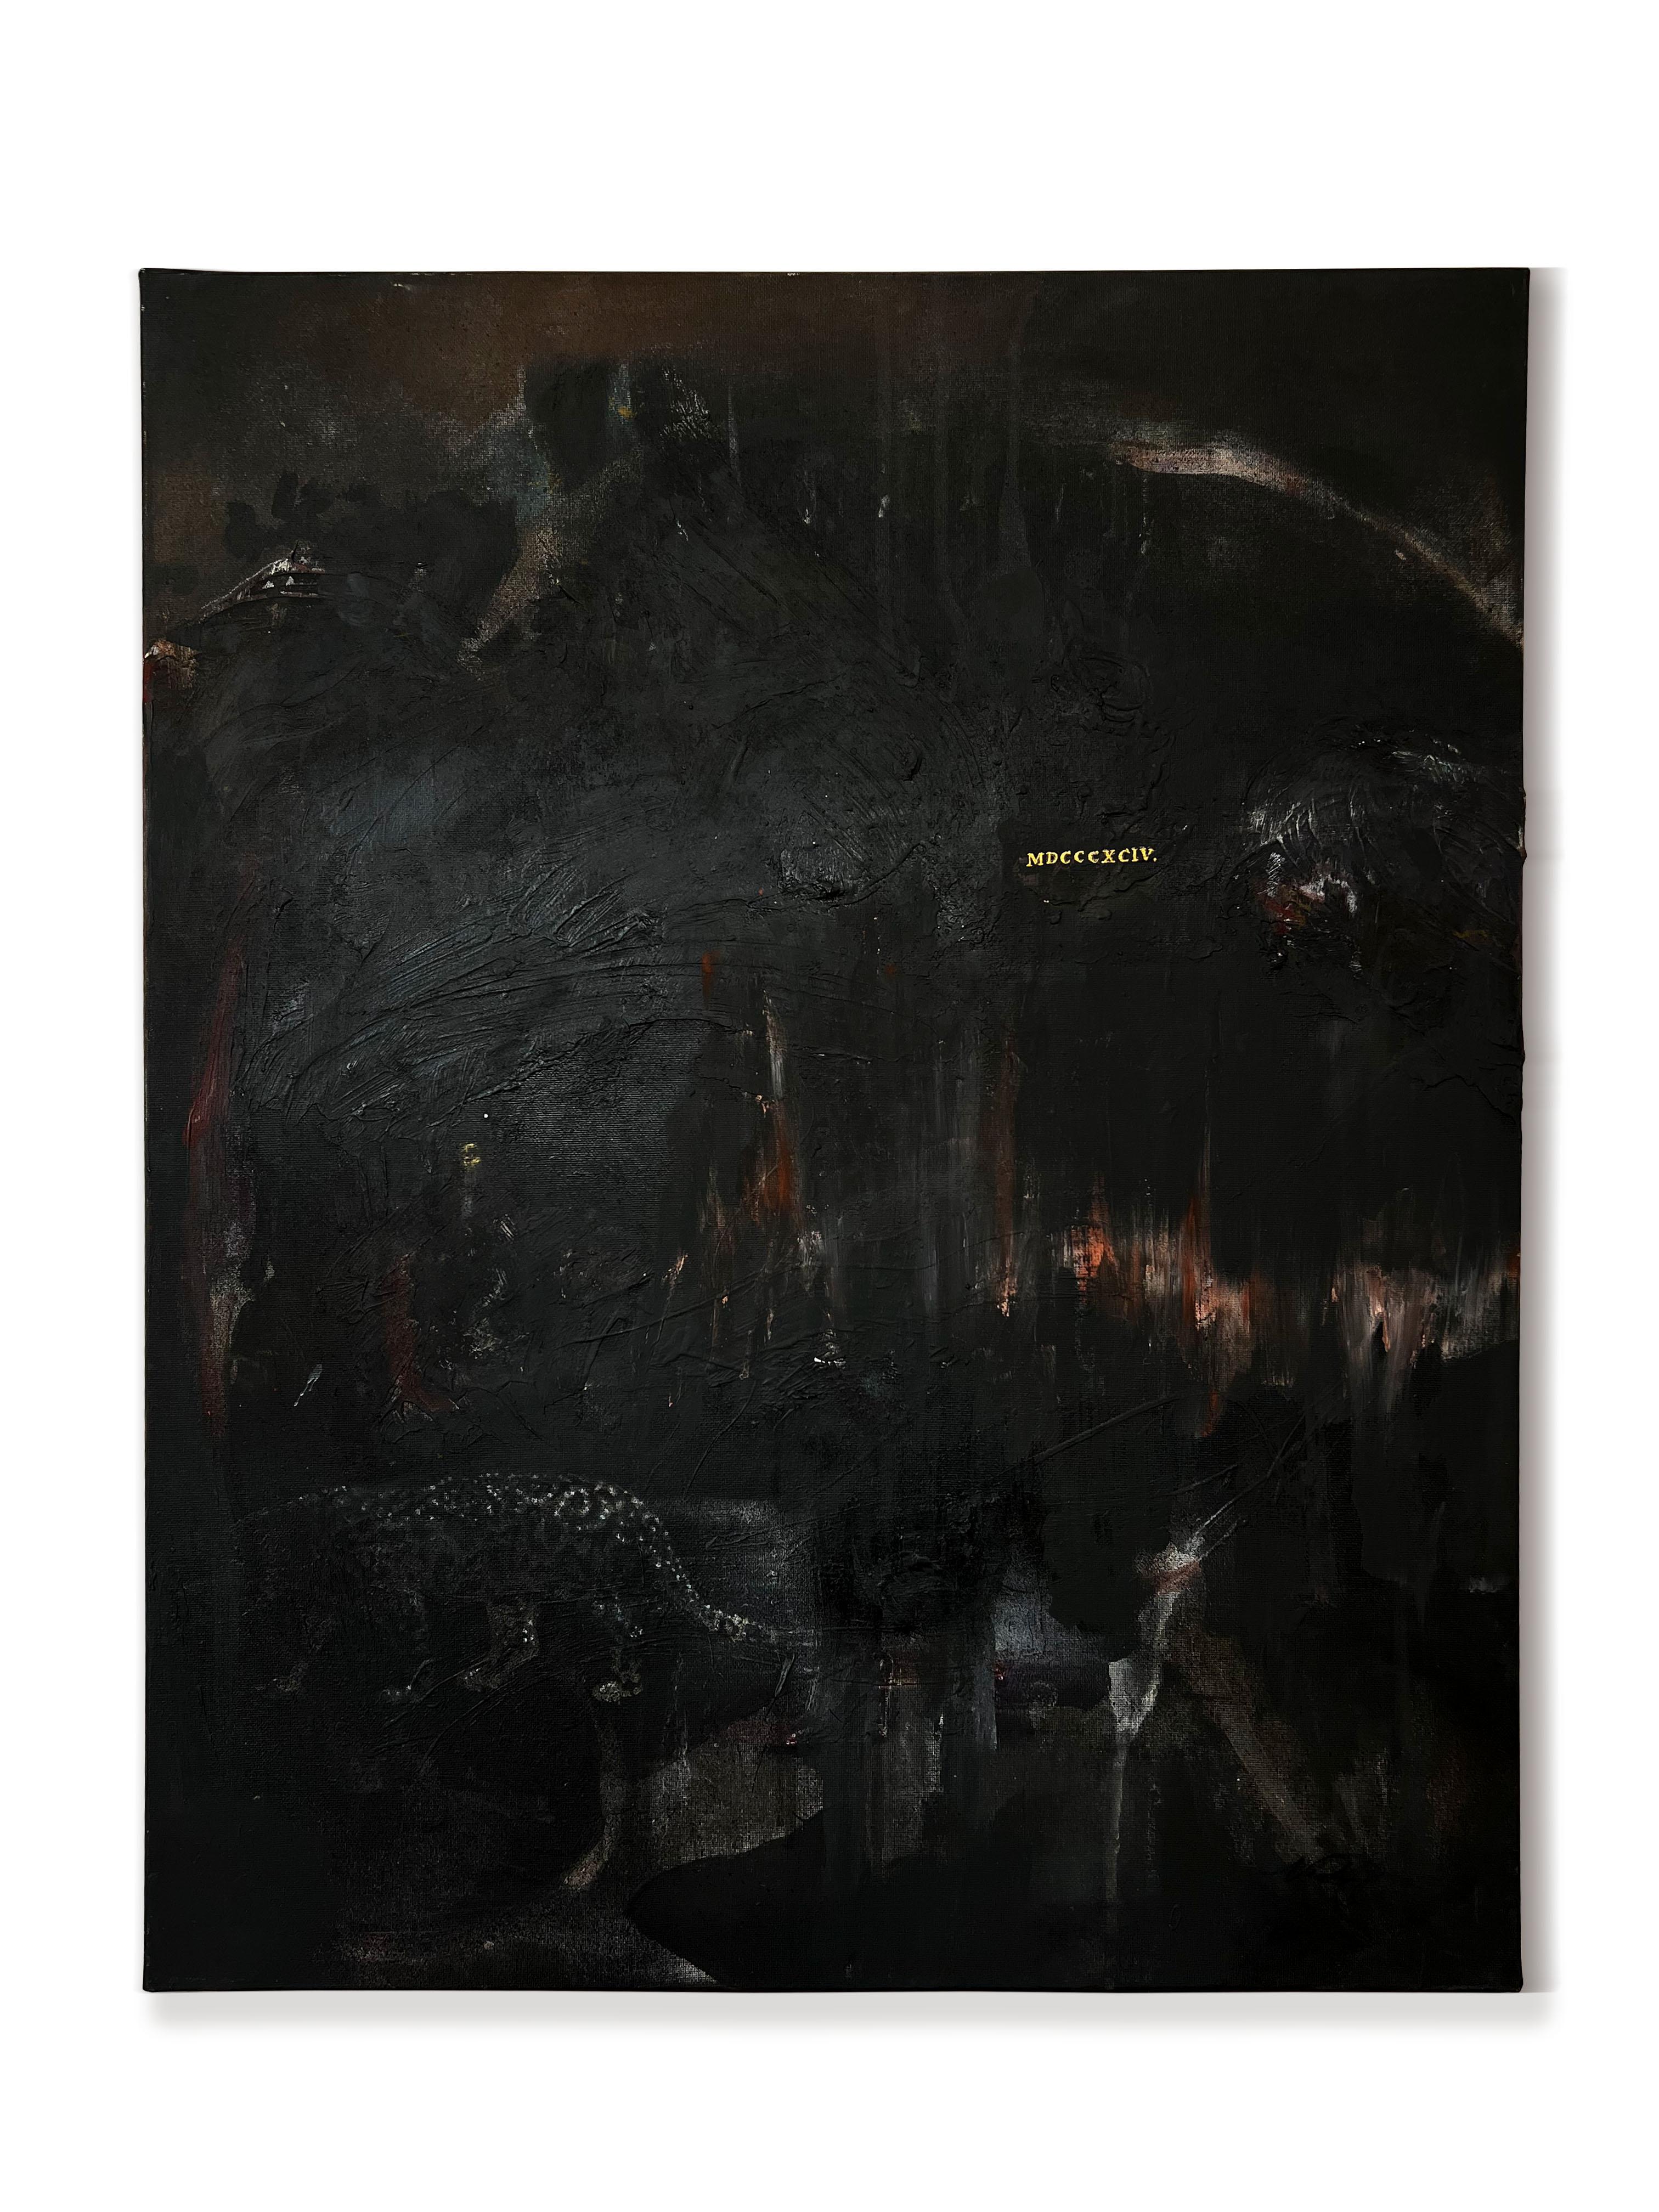 « It's Not True » (peinture abstraite, surréaliste, foncée, noire, or, léopard, toile) - Painting de Nicholas Evans